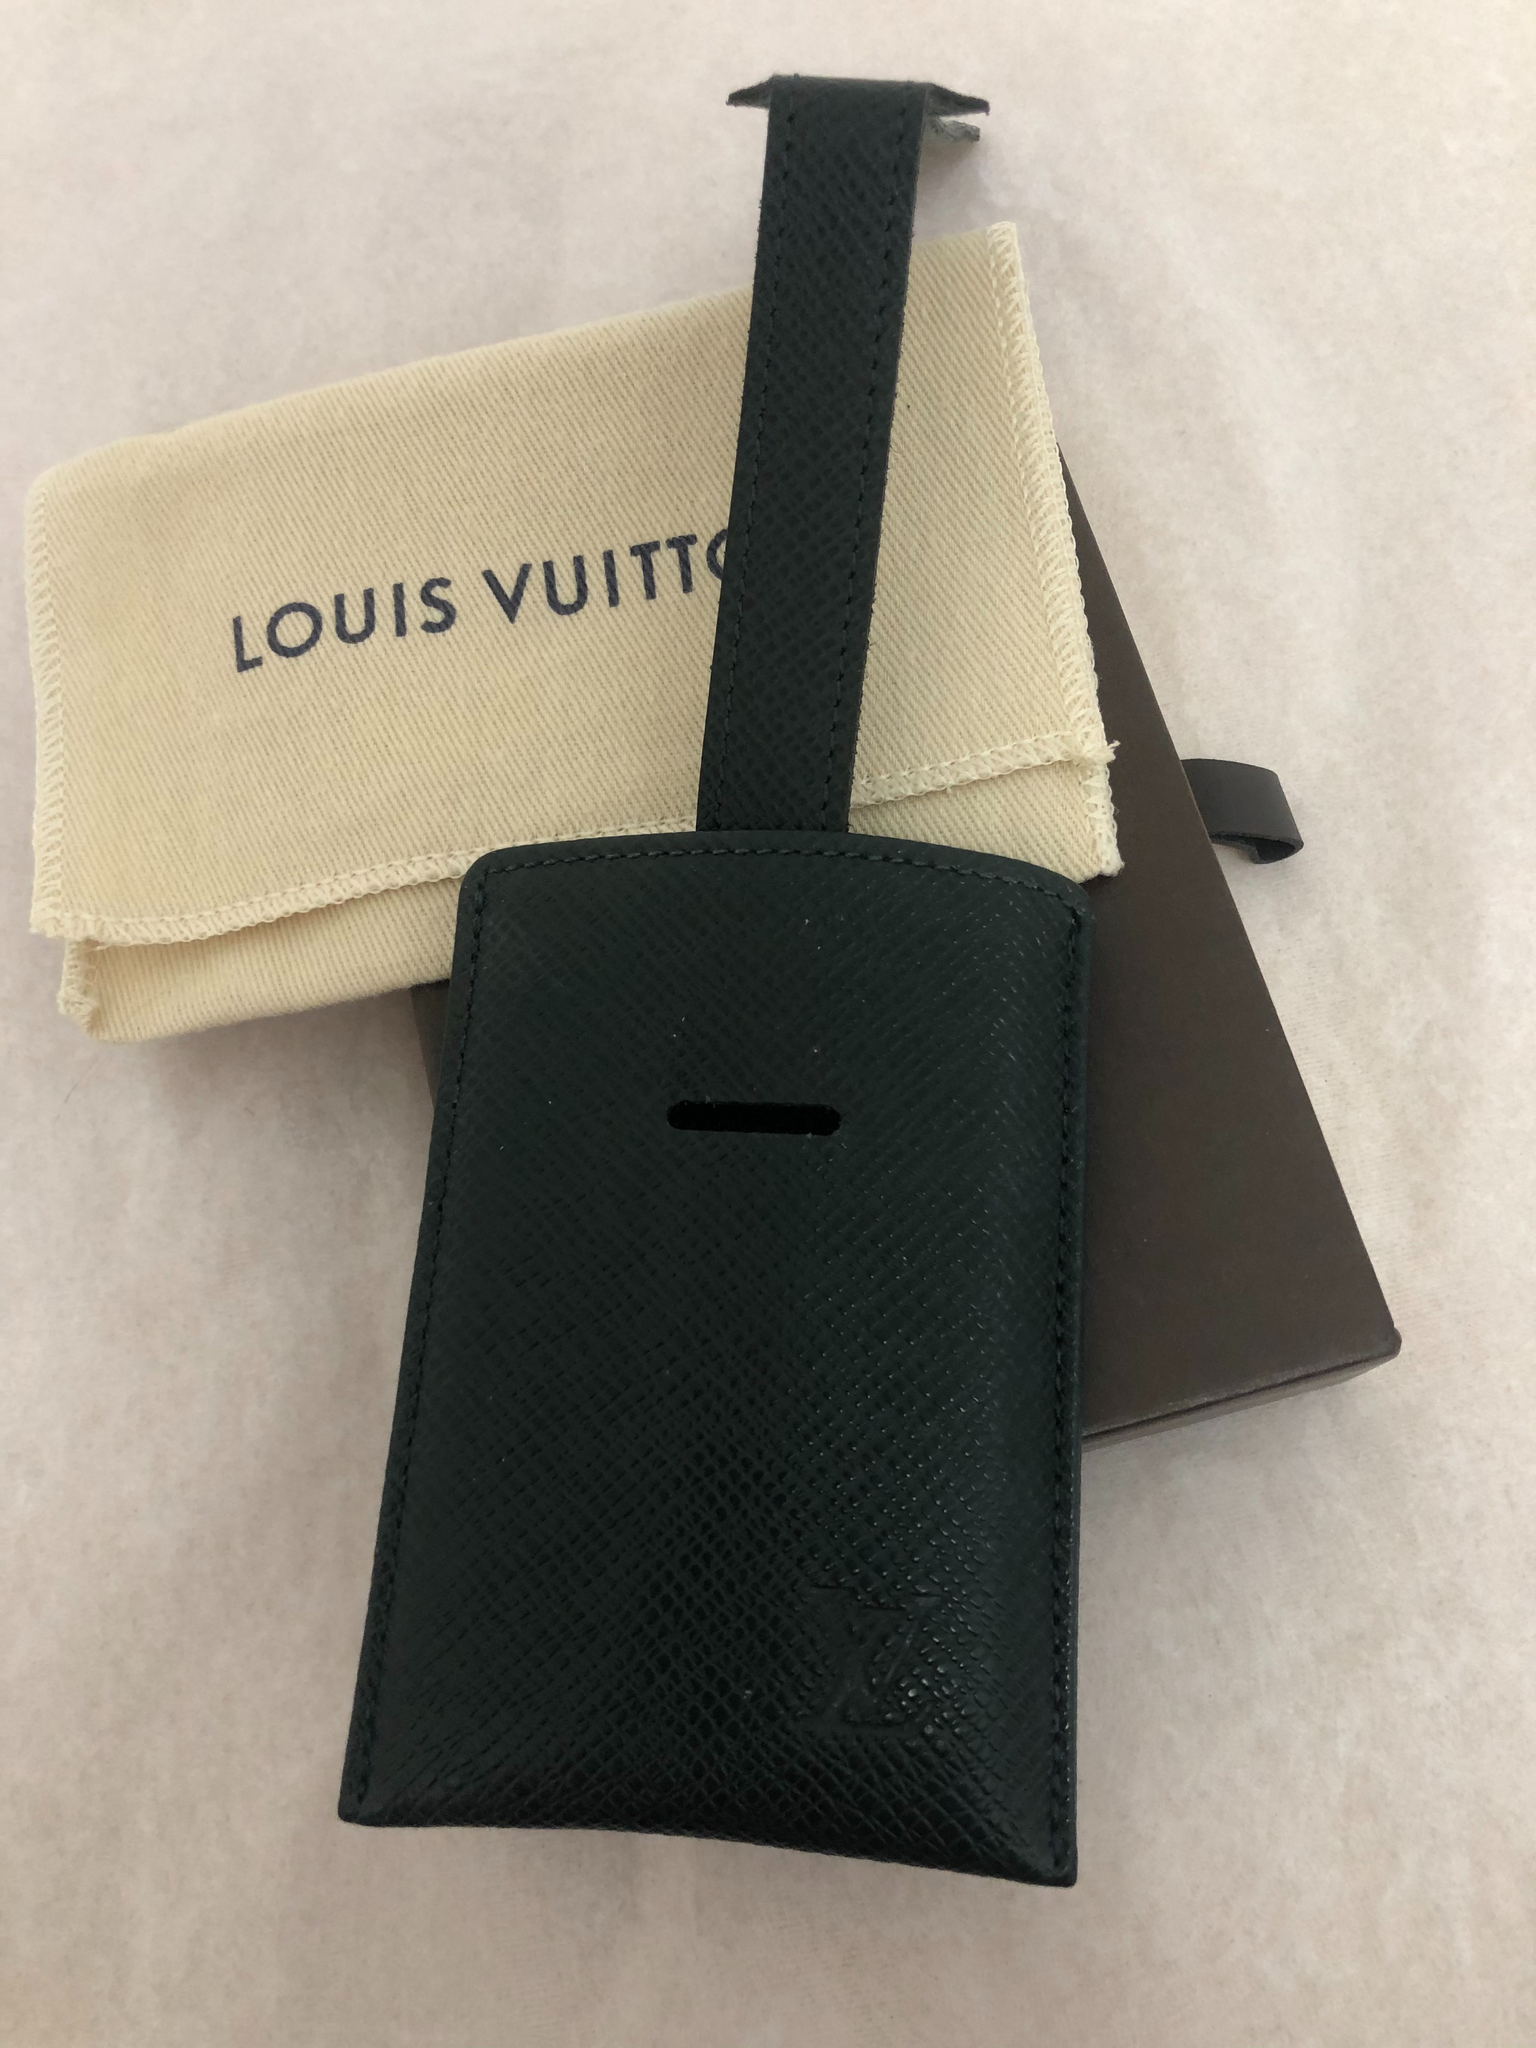 Louis Vuitton Bordeaux Taiga Leather Card Case Wallet Holder 12l520 –  Bagriculture